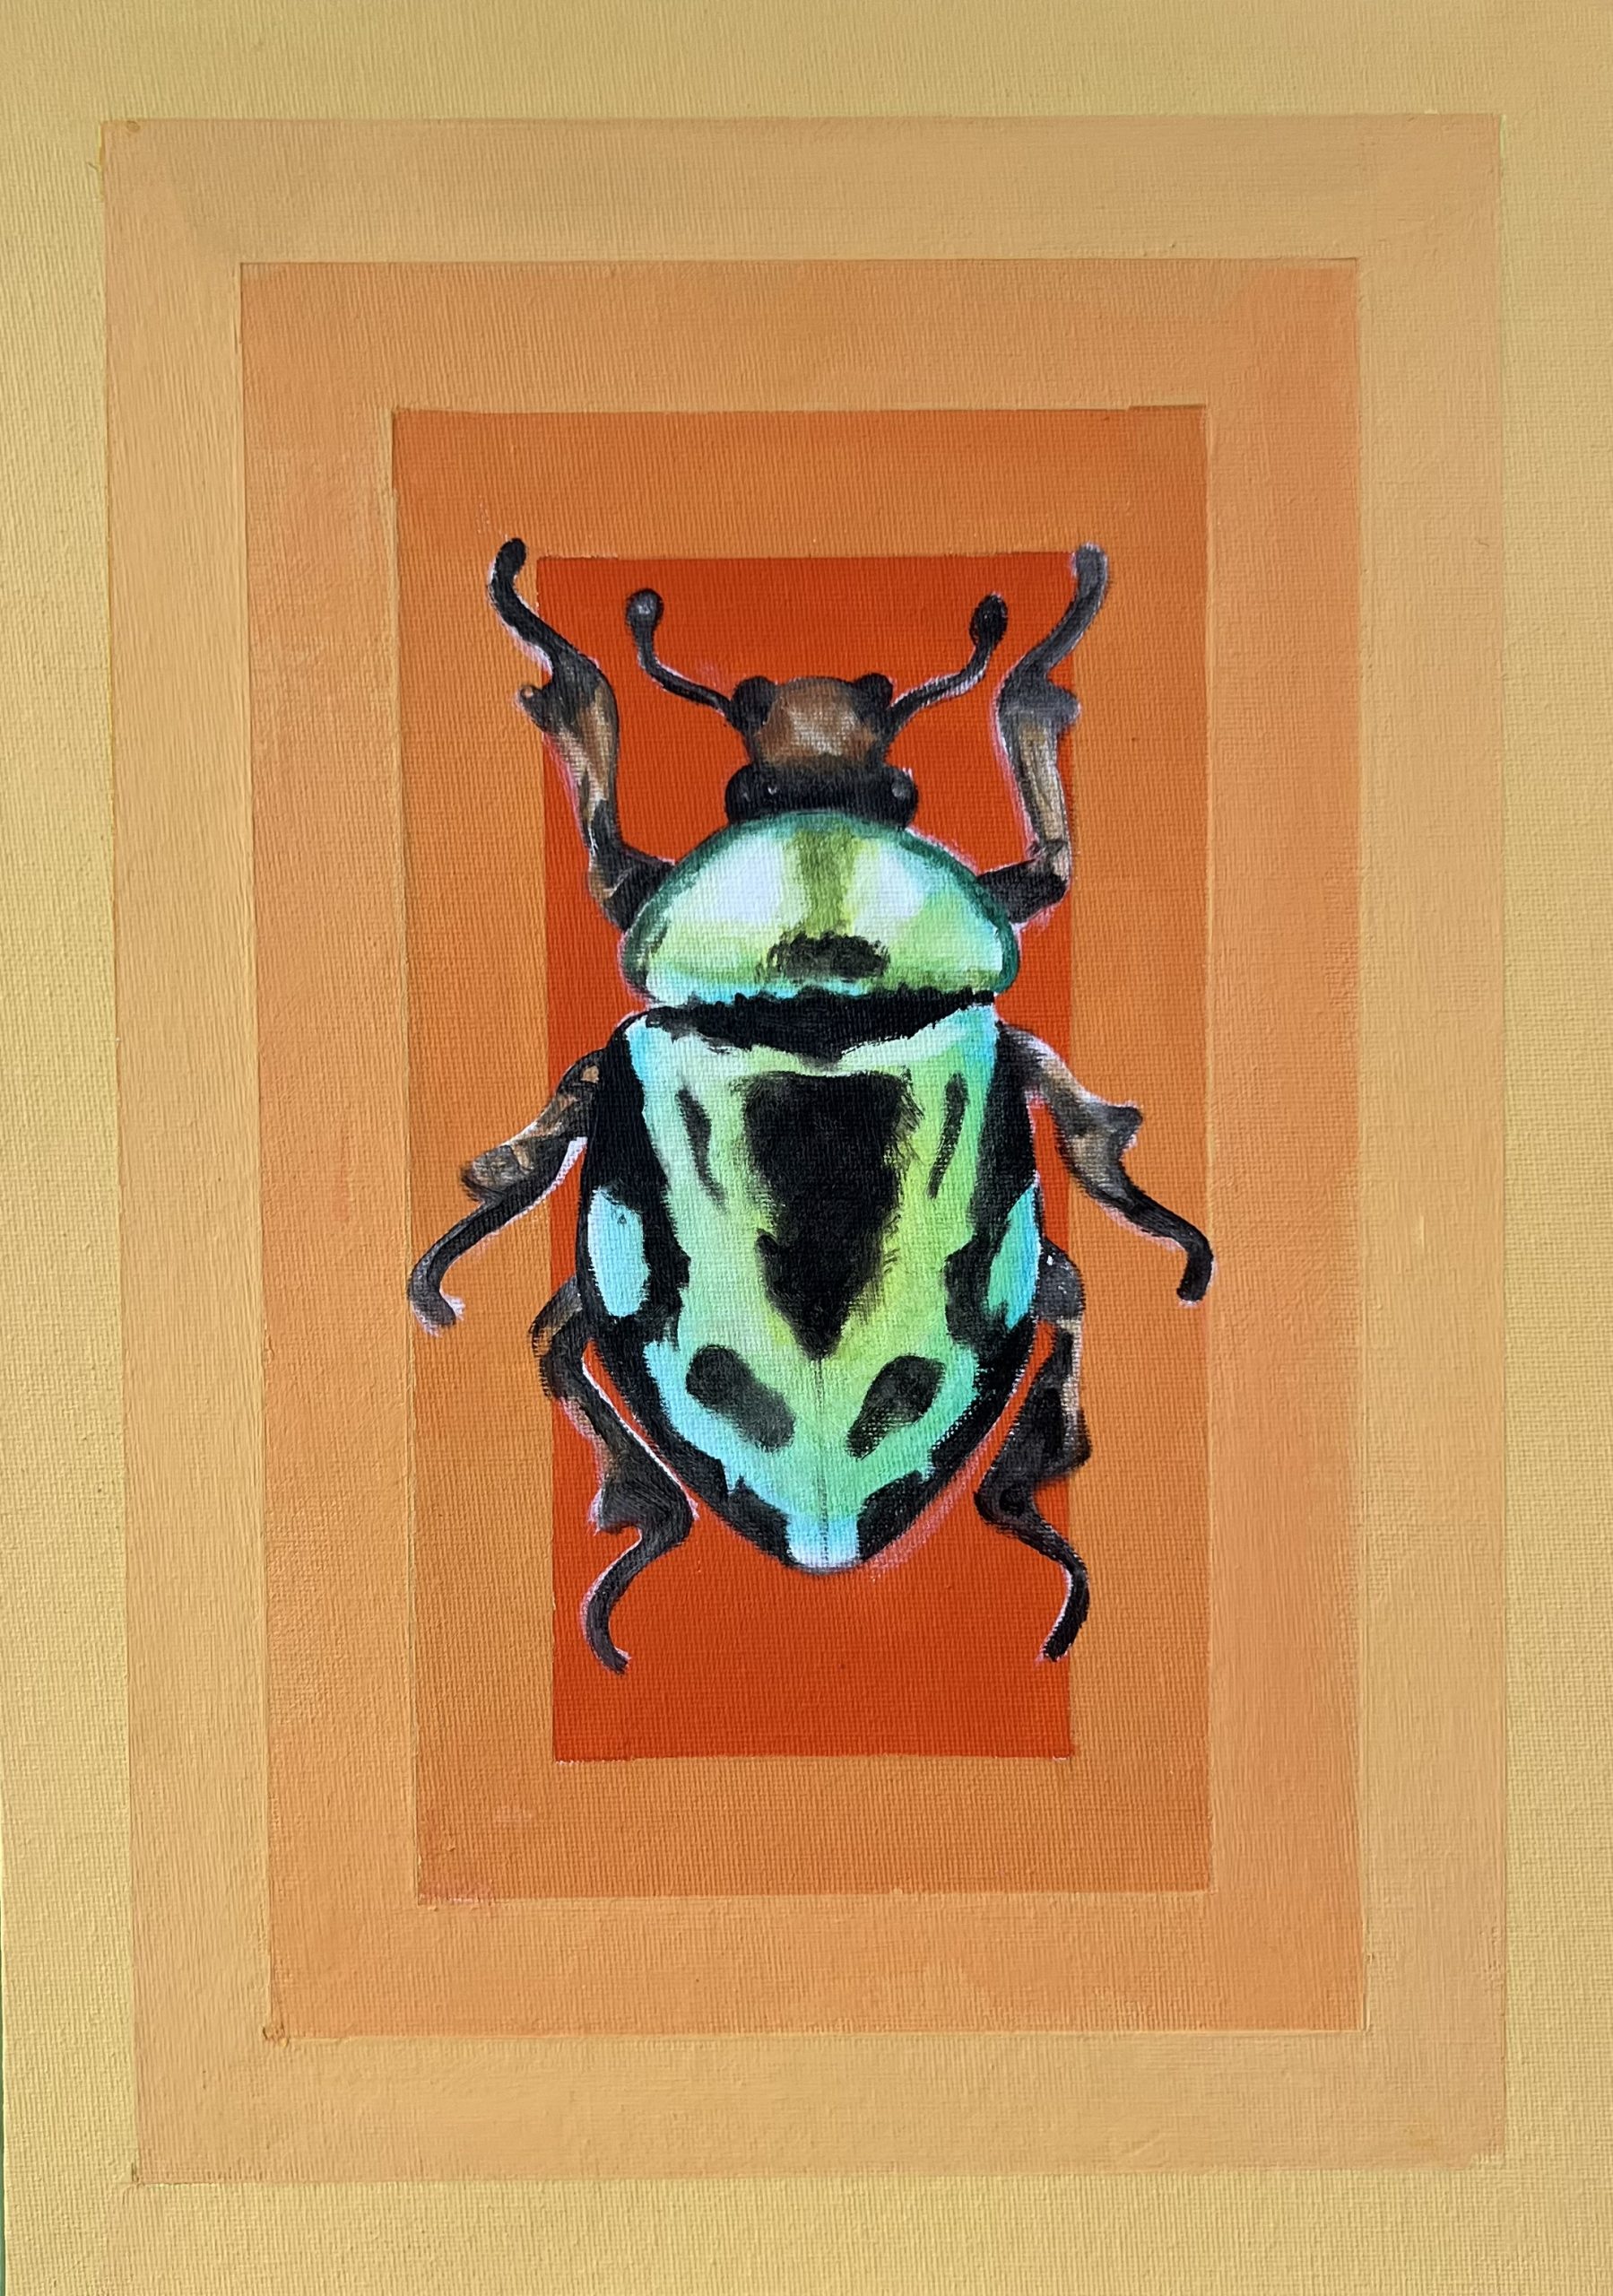 Orange Beetle